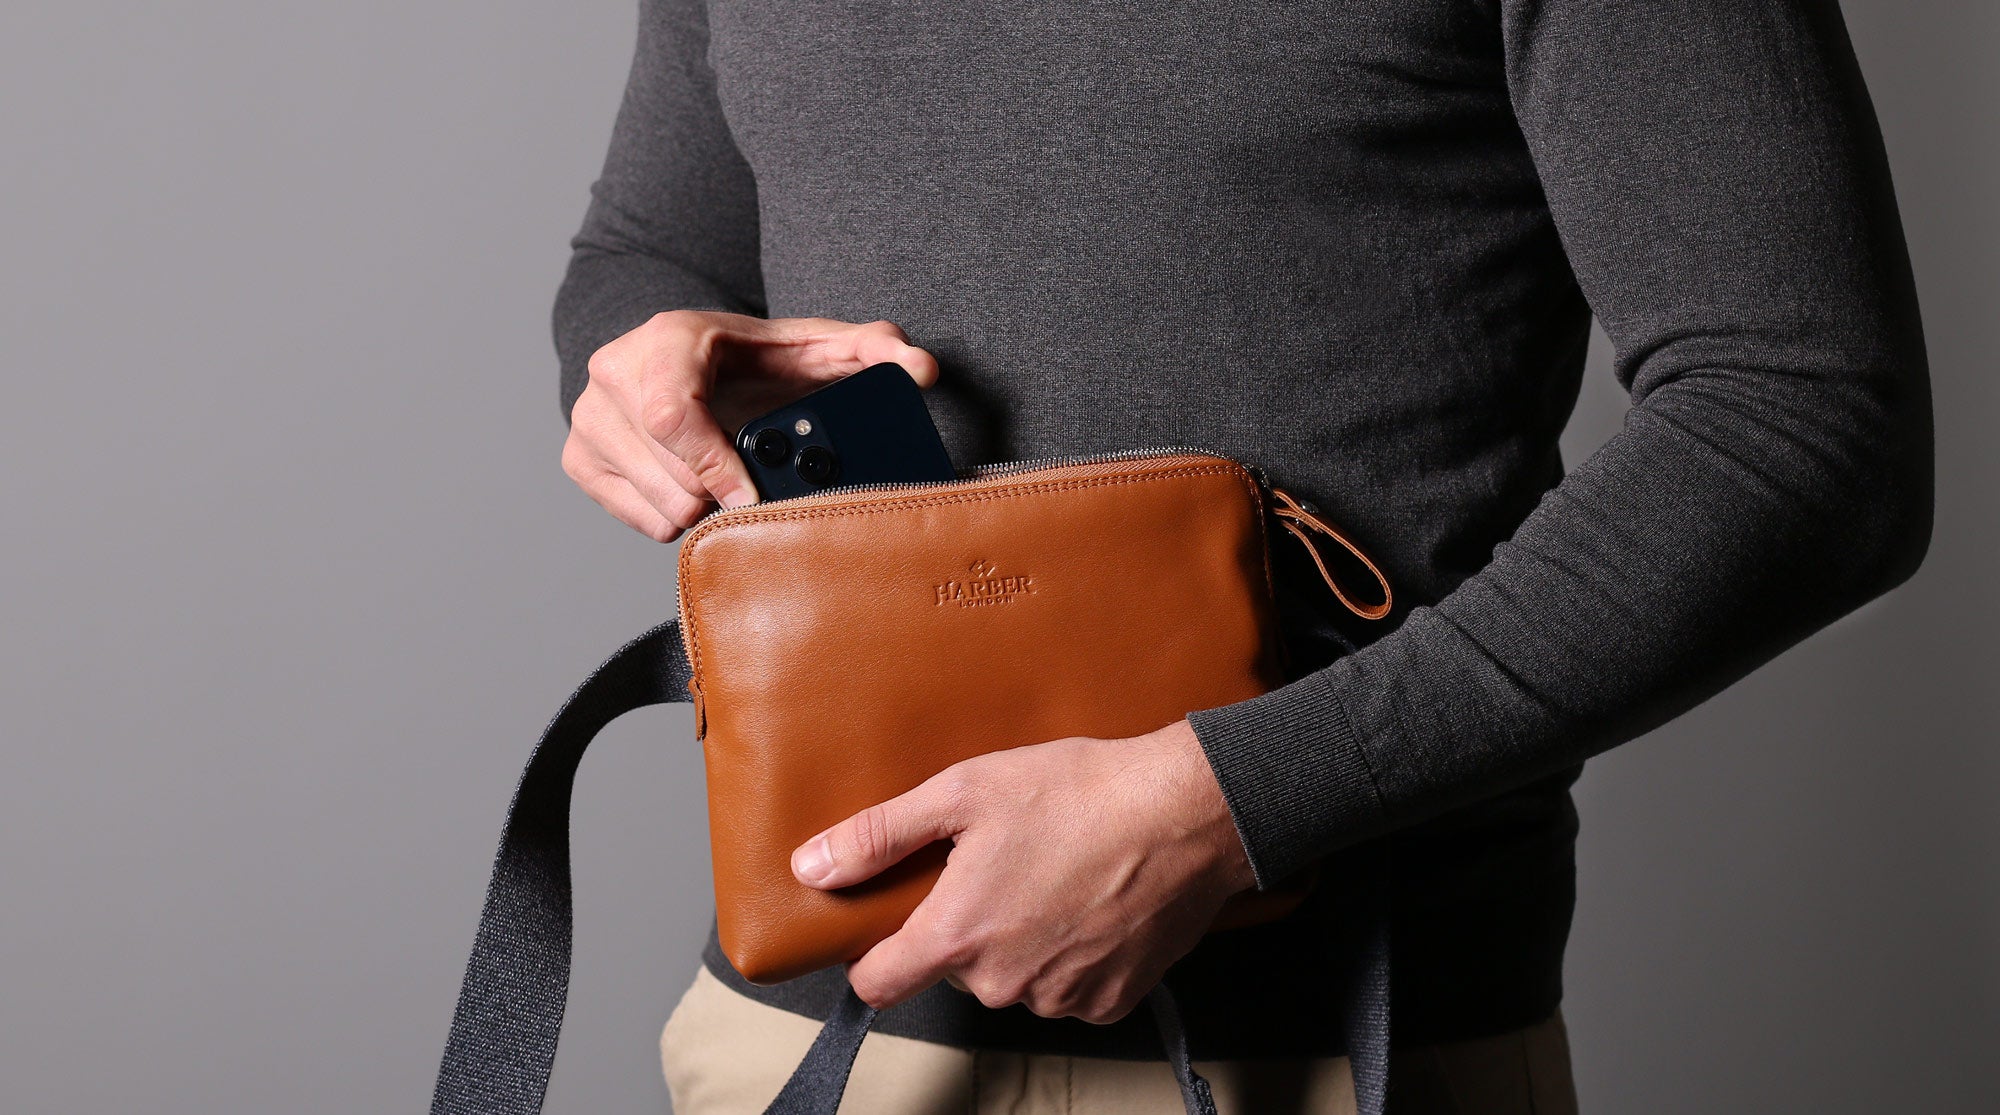 Umhängetasche aus Leder, perfekt zum Tragen von iPhone, Brieftaschen und vielem mehr.